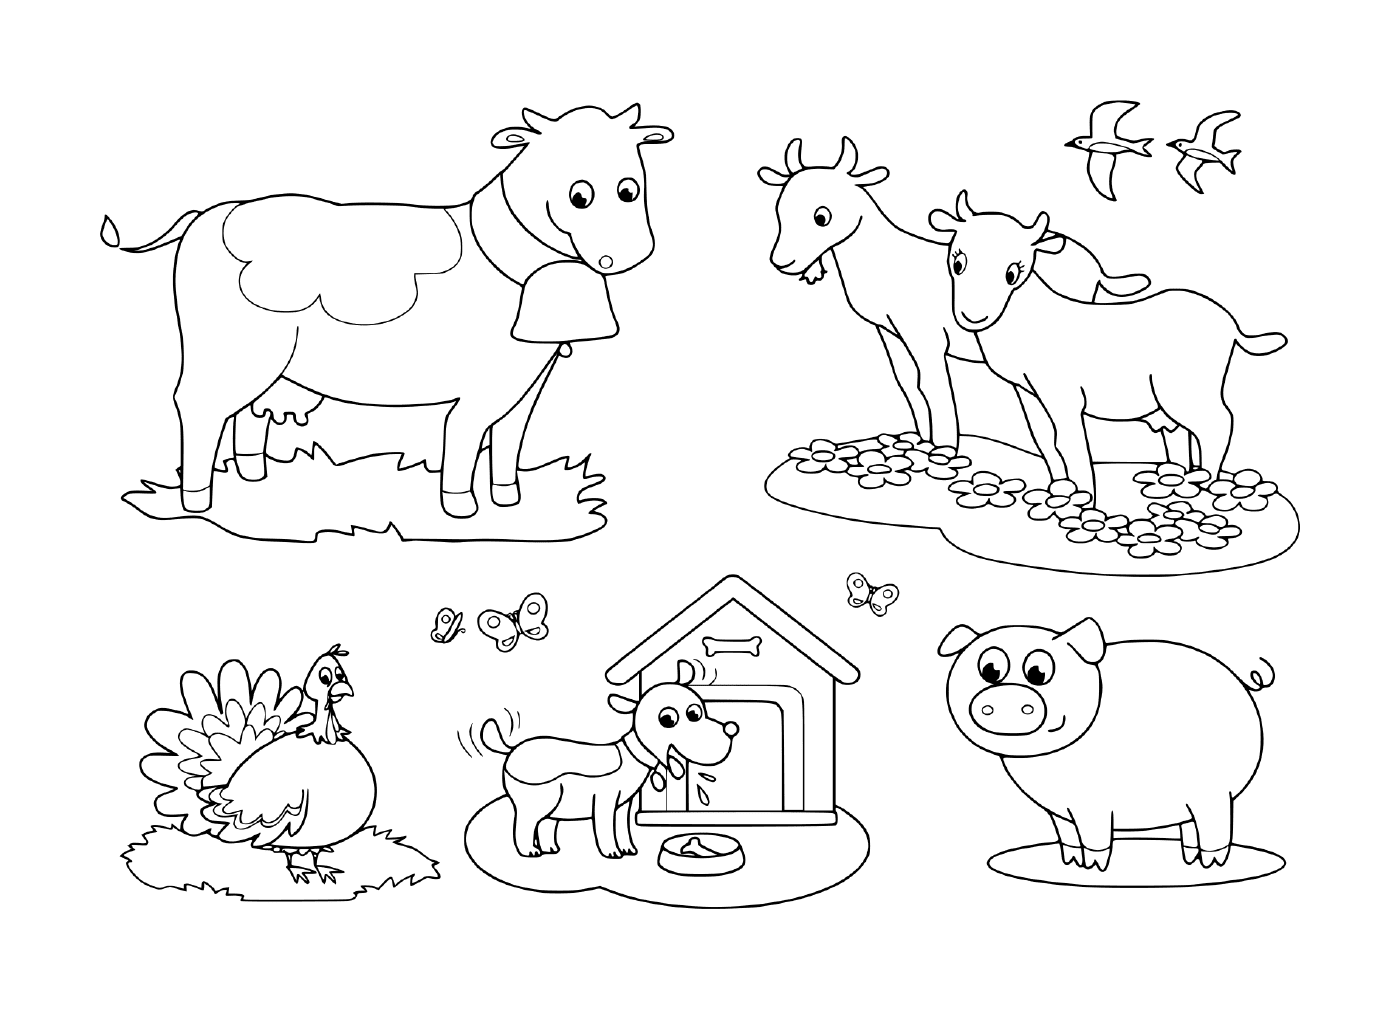  un grupo de animales de granja incluyendo una cabra, una vaca, un cerdo, un pavo, un perro y una golondrina 